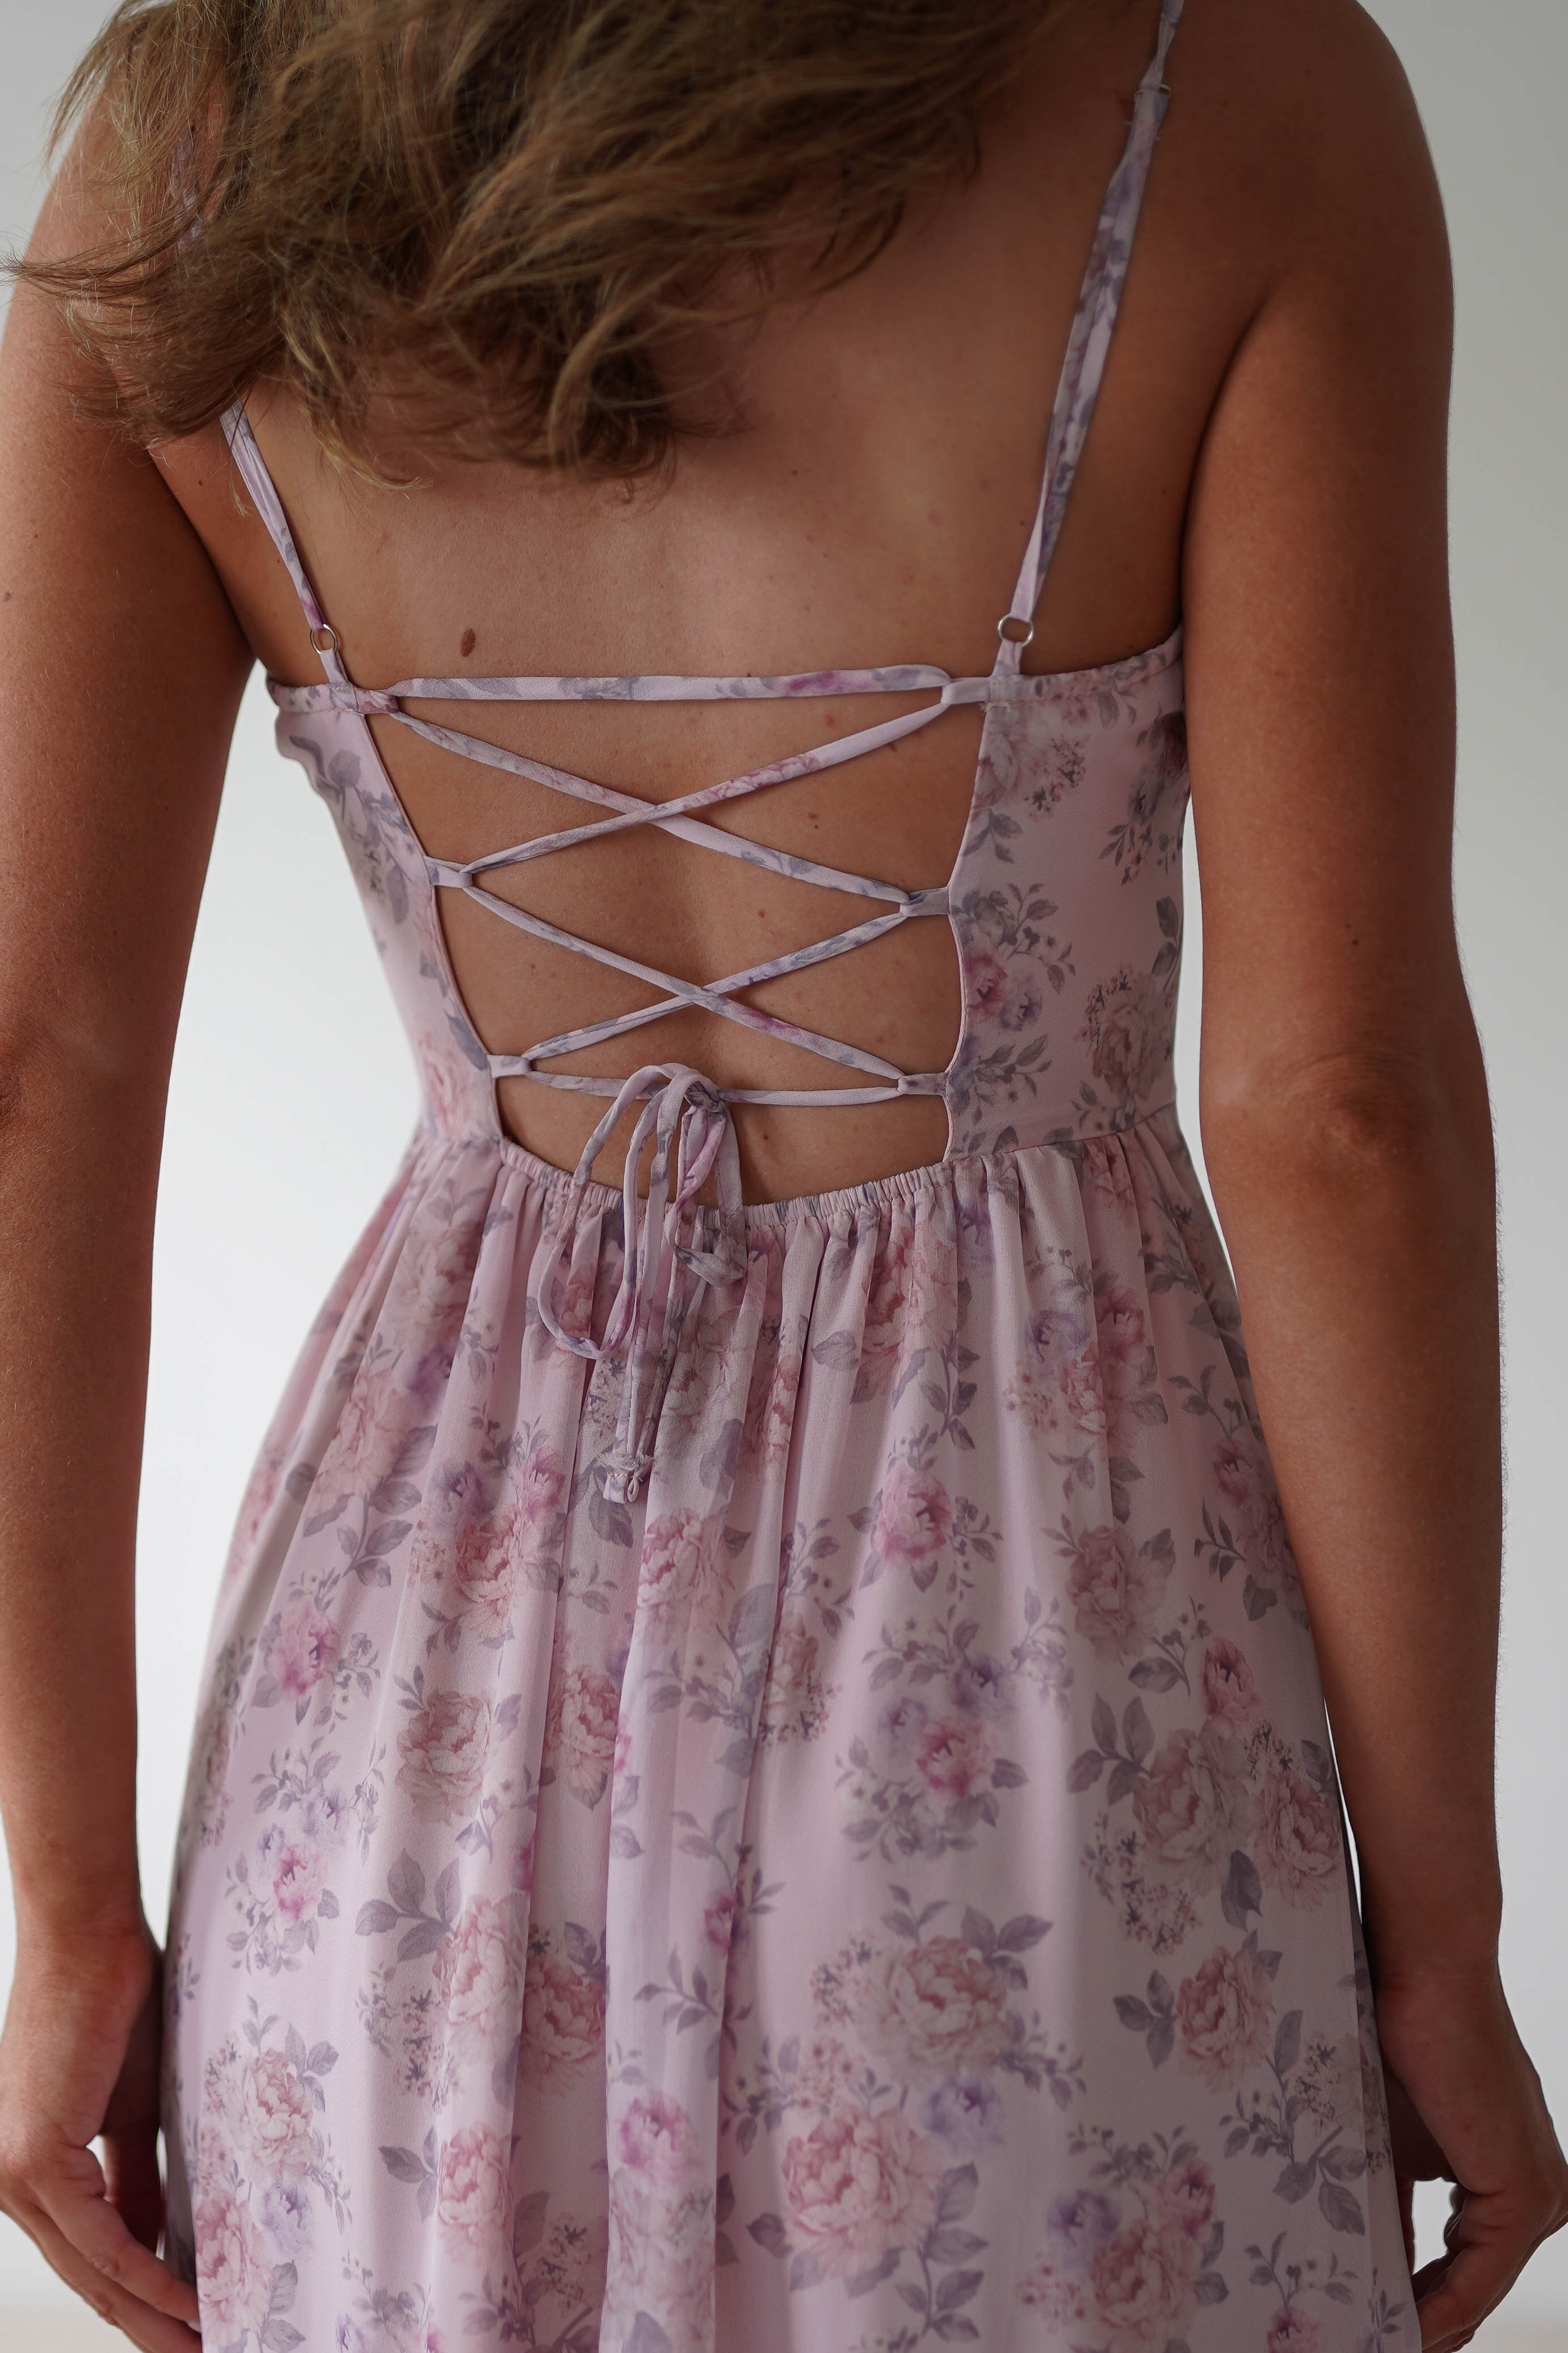 Remi Floral Chiffon Maxi Dress | Pink